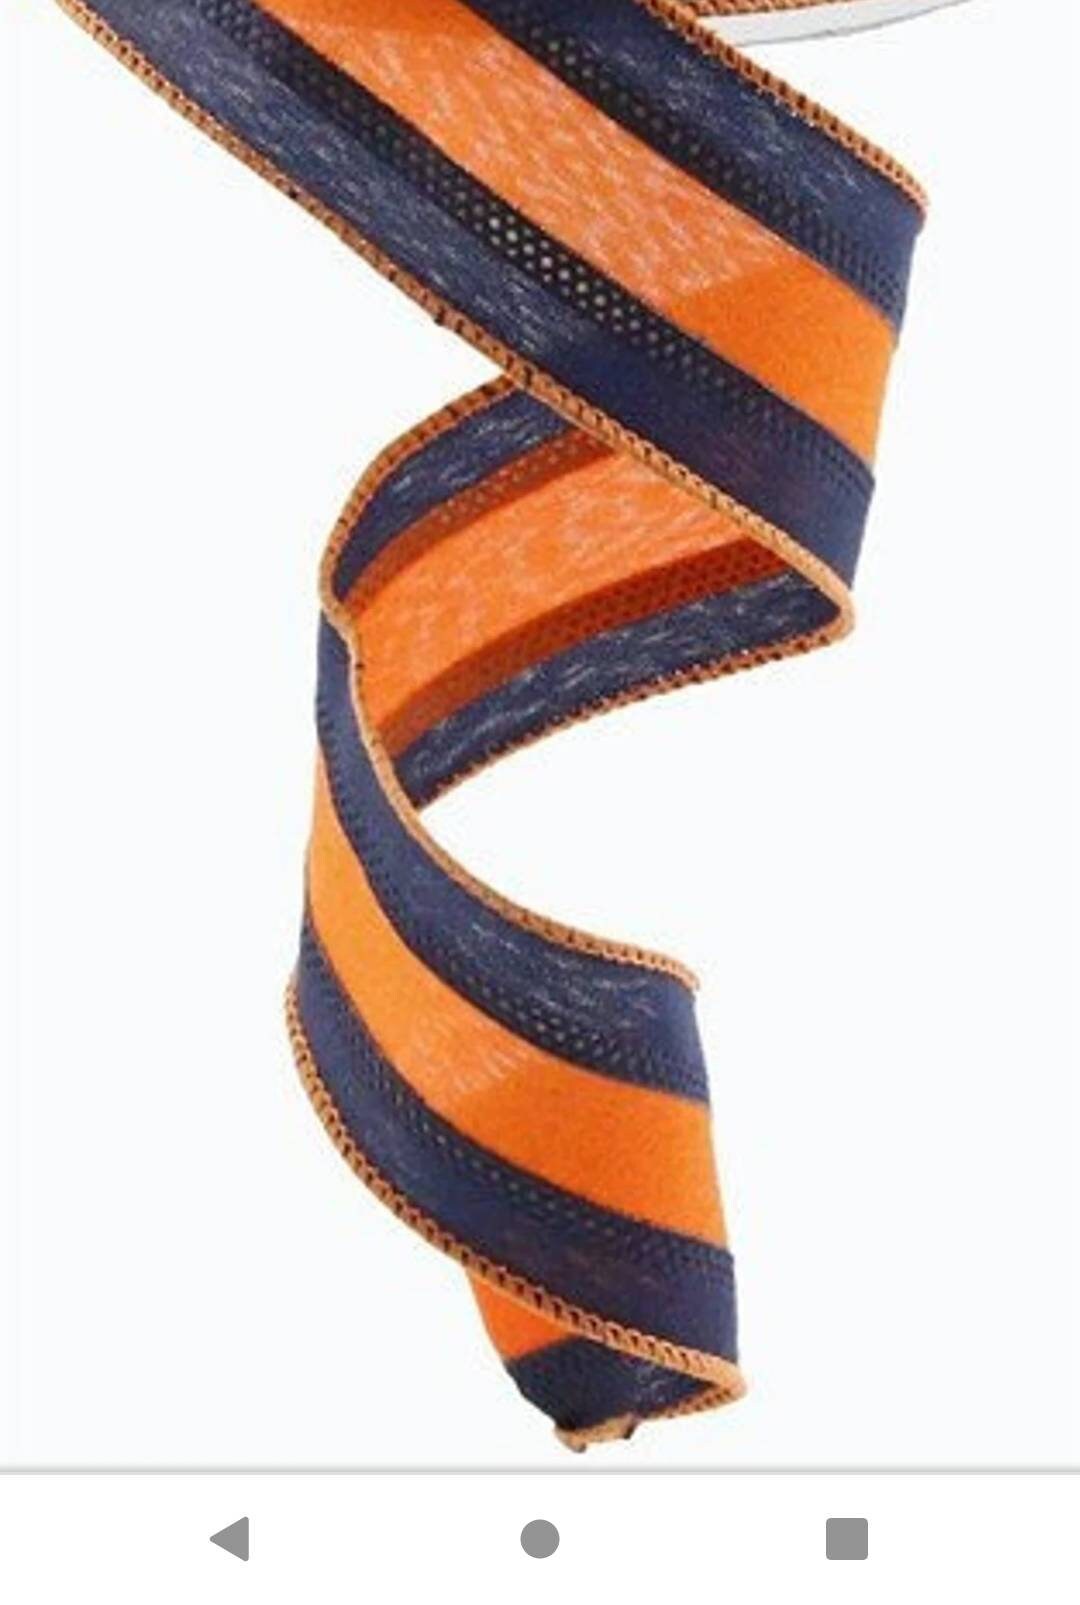 Set Of Decorative Orange Bows With Horizontal Orange Ribbons